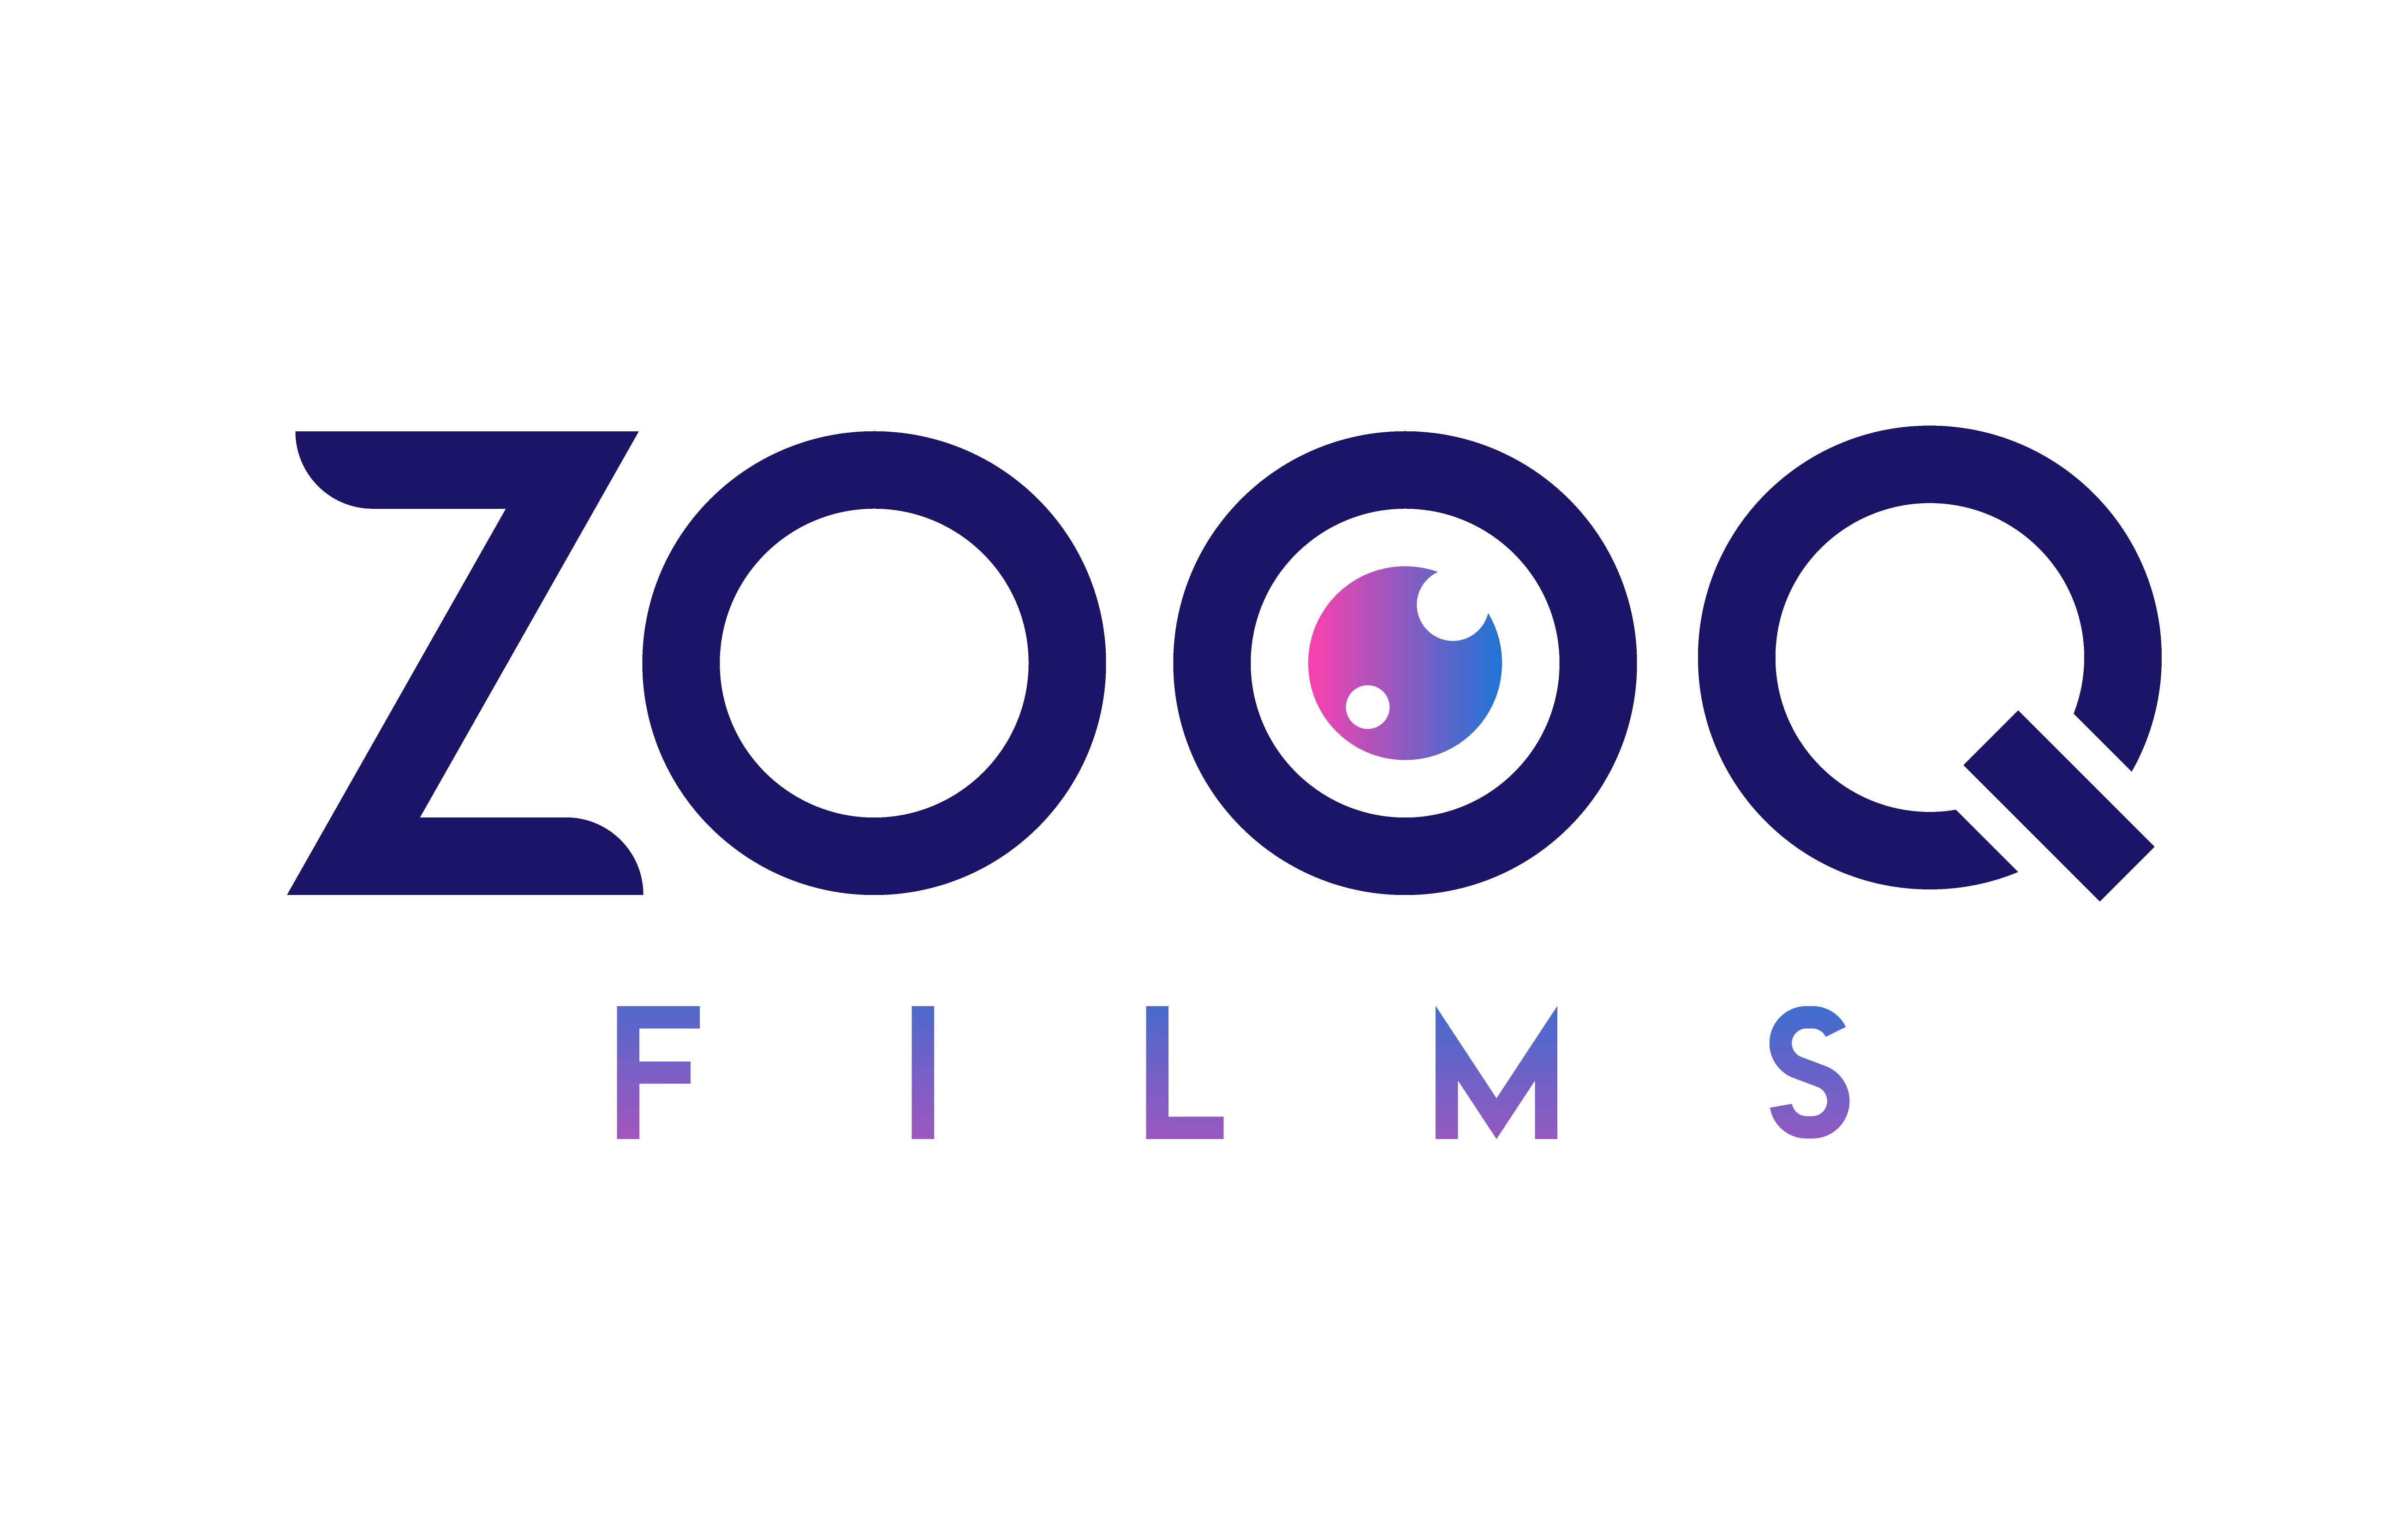 Zooq Films